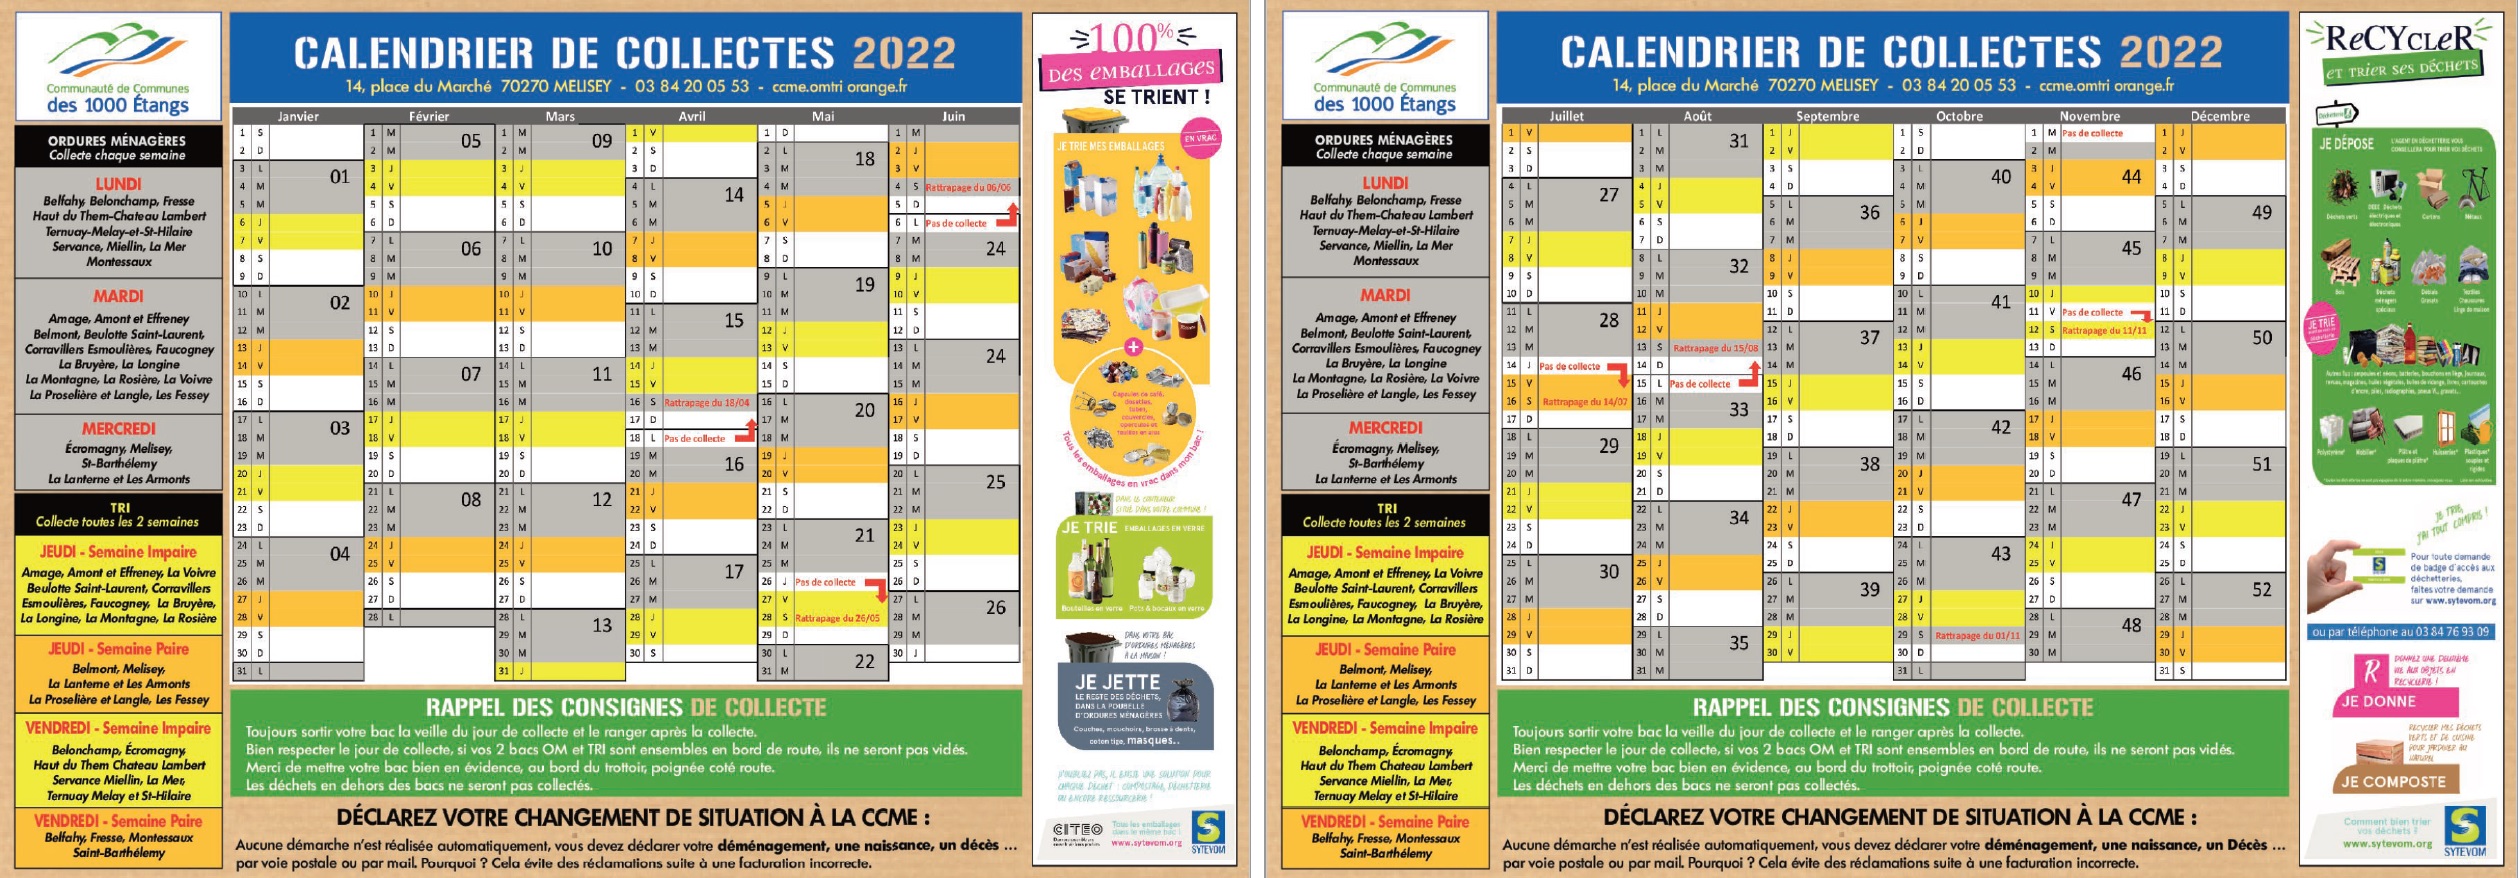 calendrier-collectes-2022